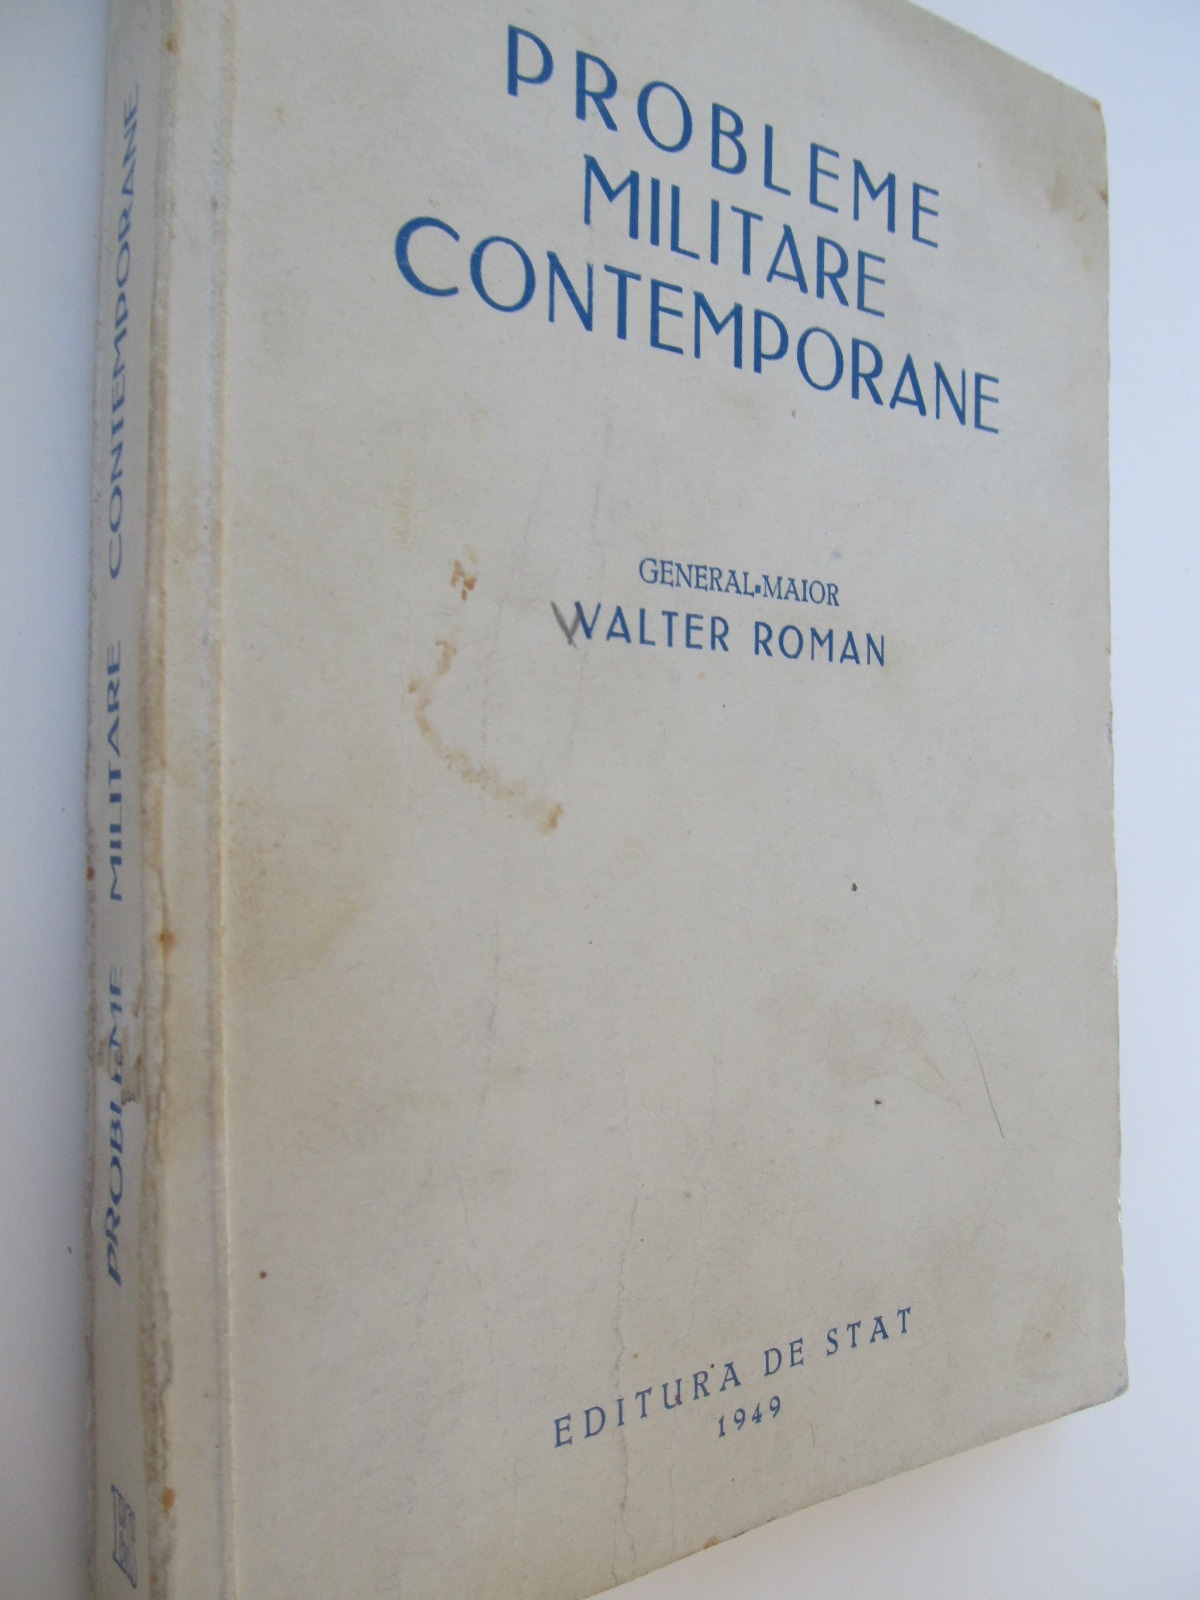 Probleme militare contemporane , 1949 - Walter Roman | Detalii carte